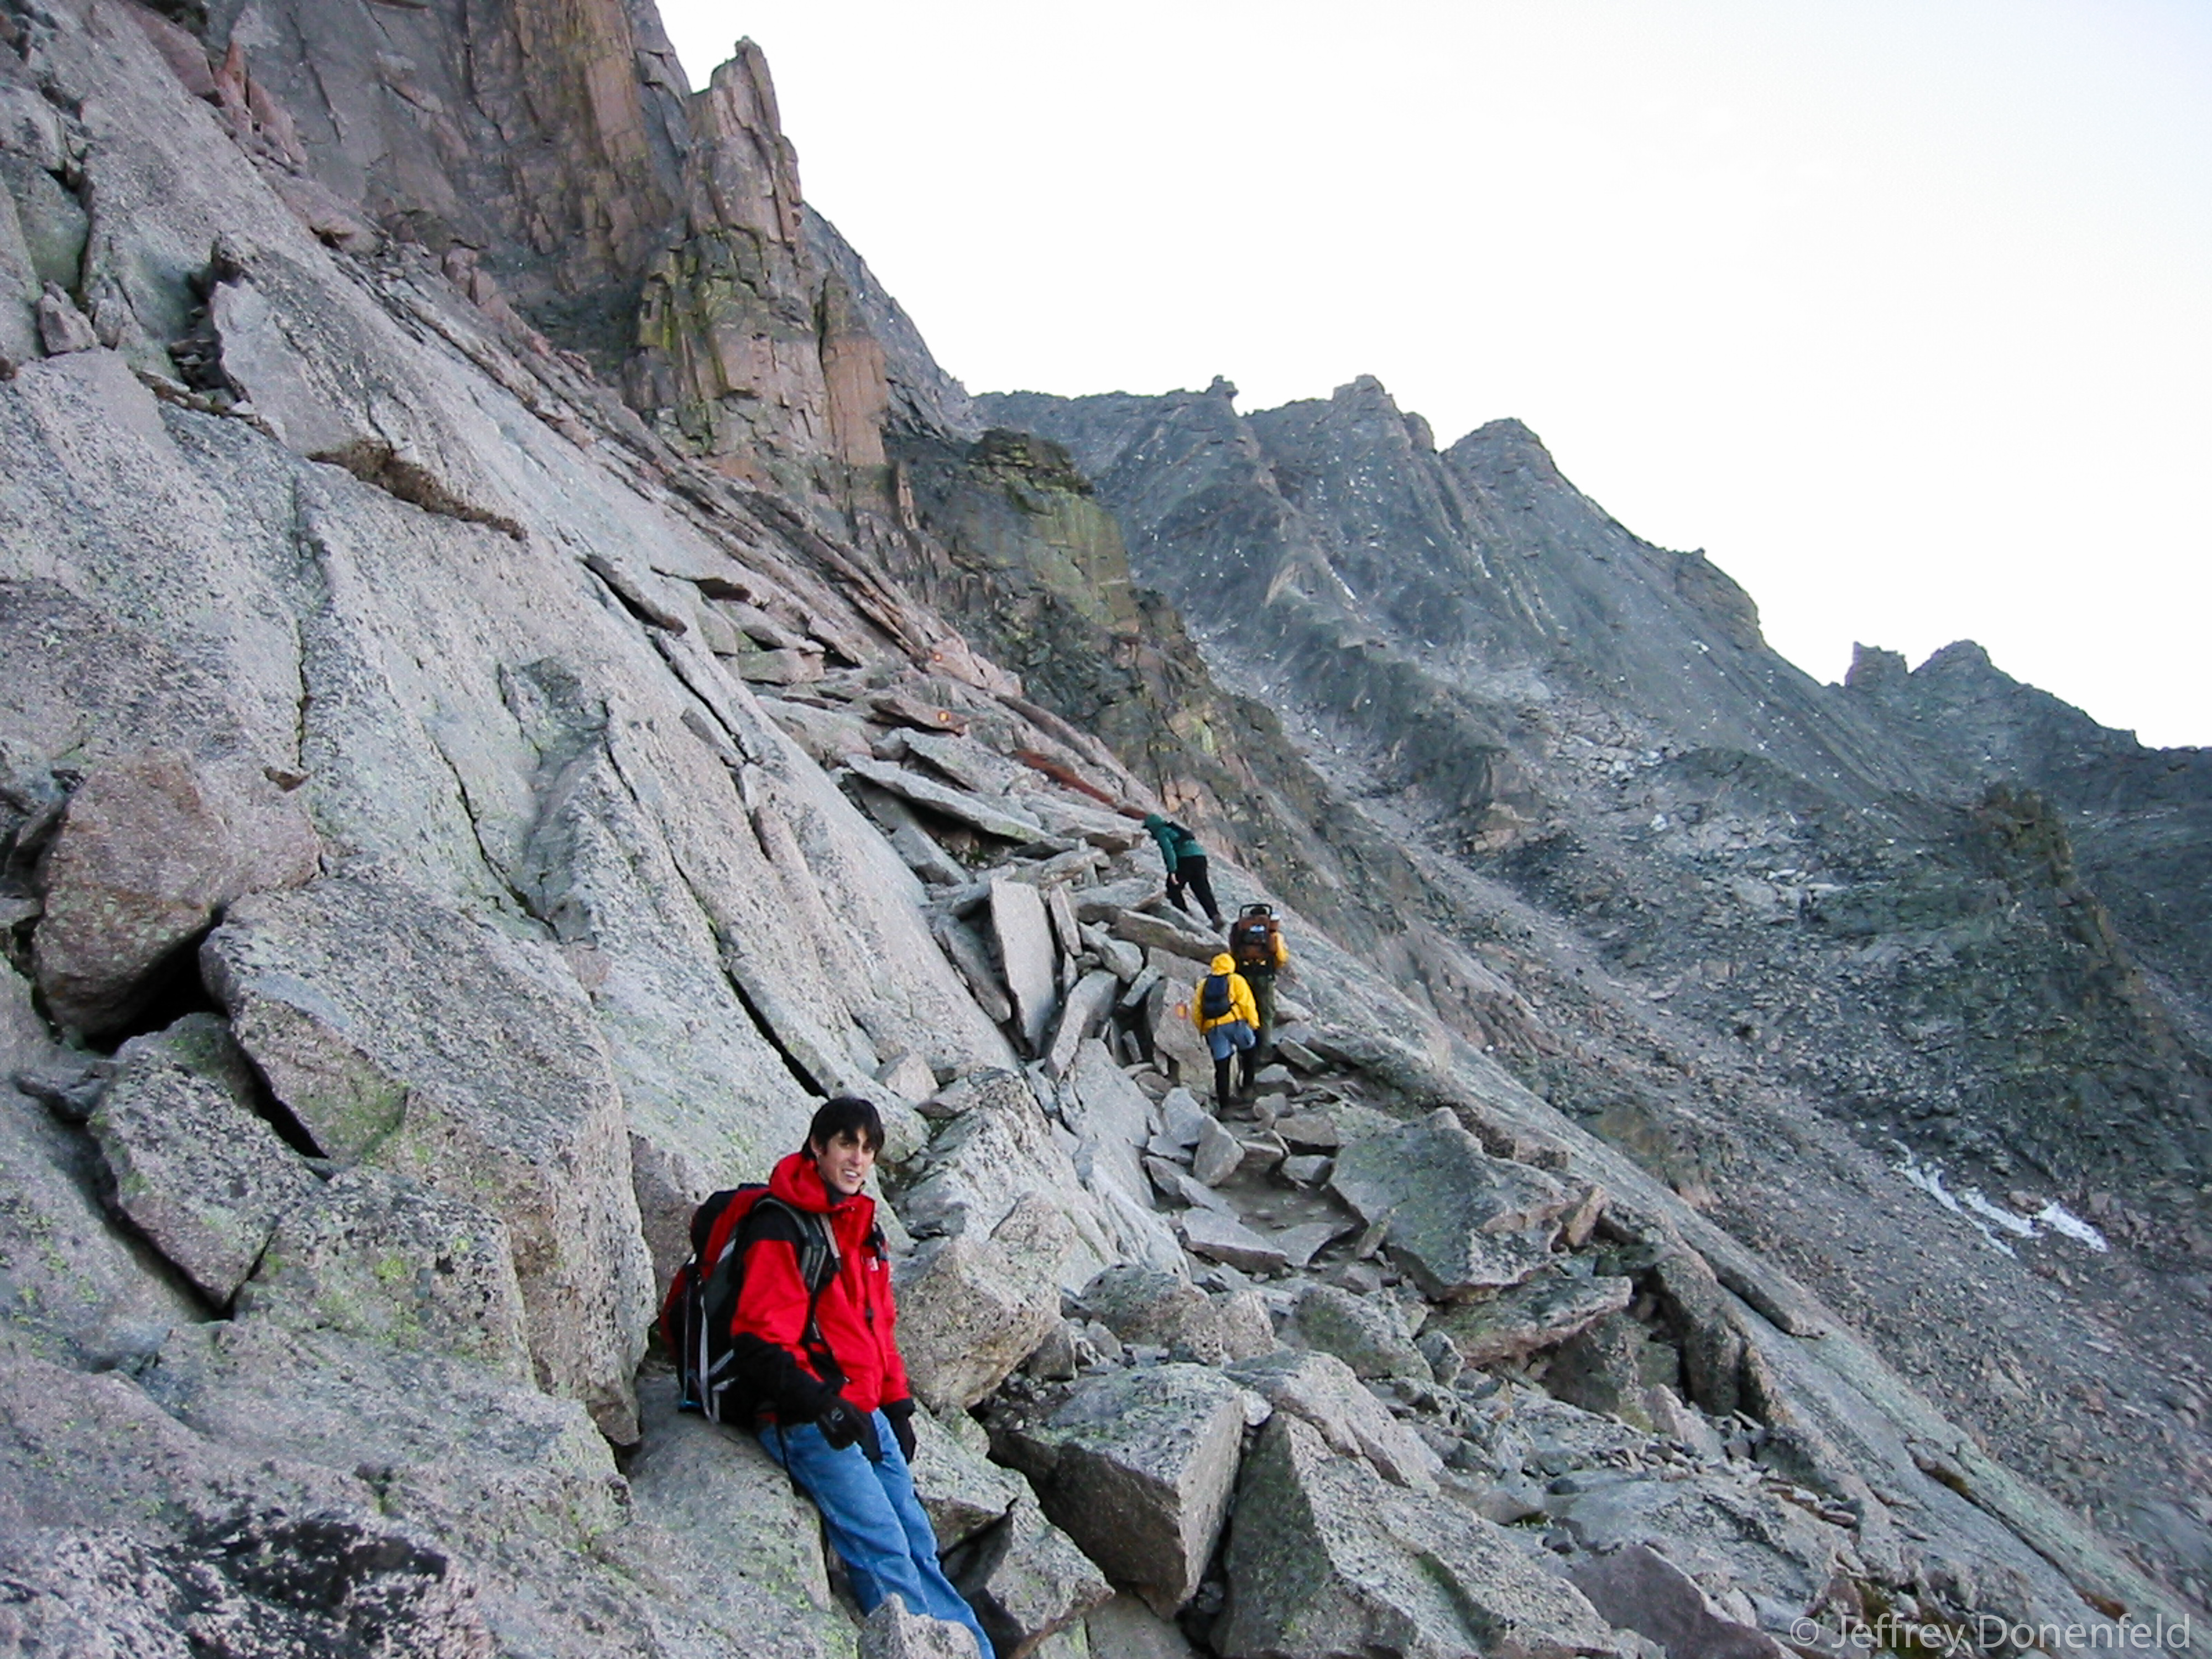 Climbing Longs Peak – 14,259 Feet